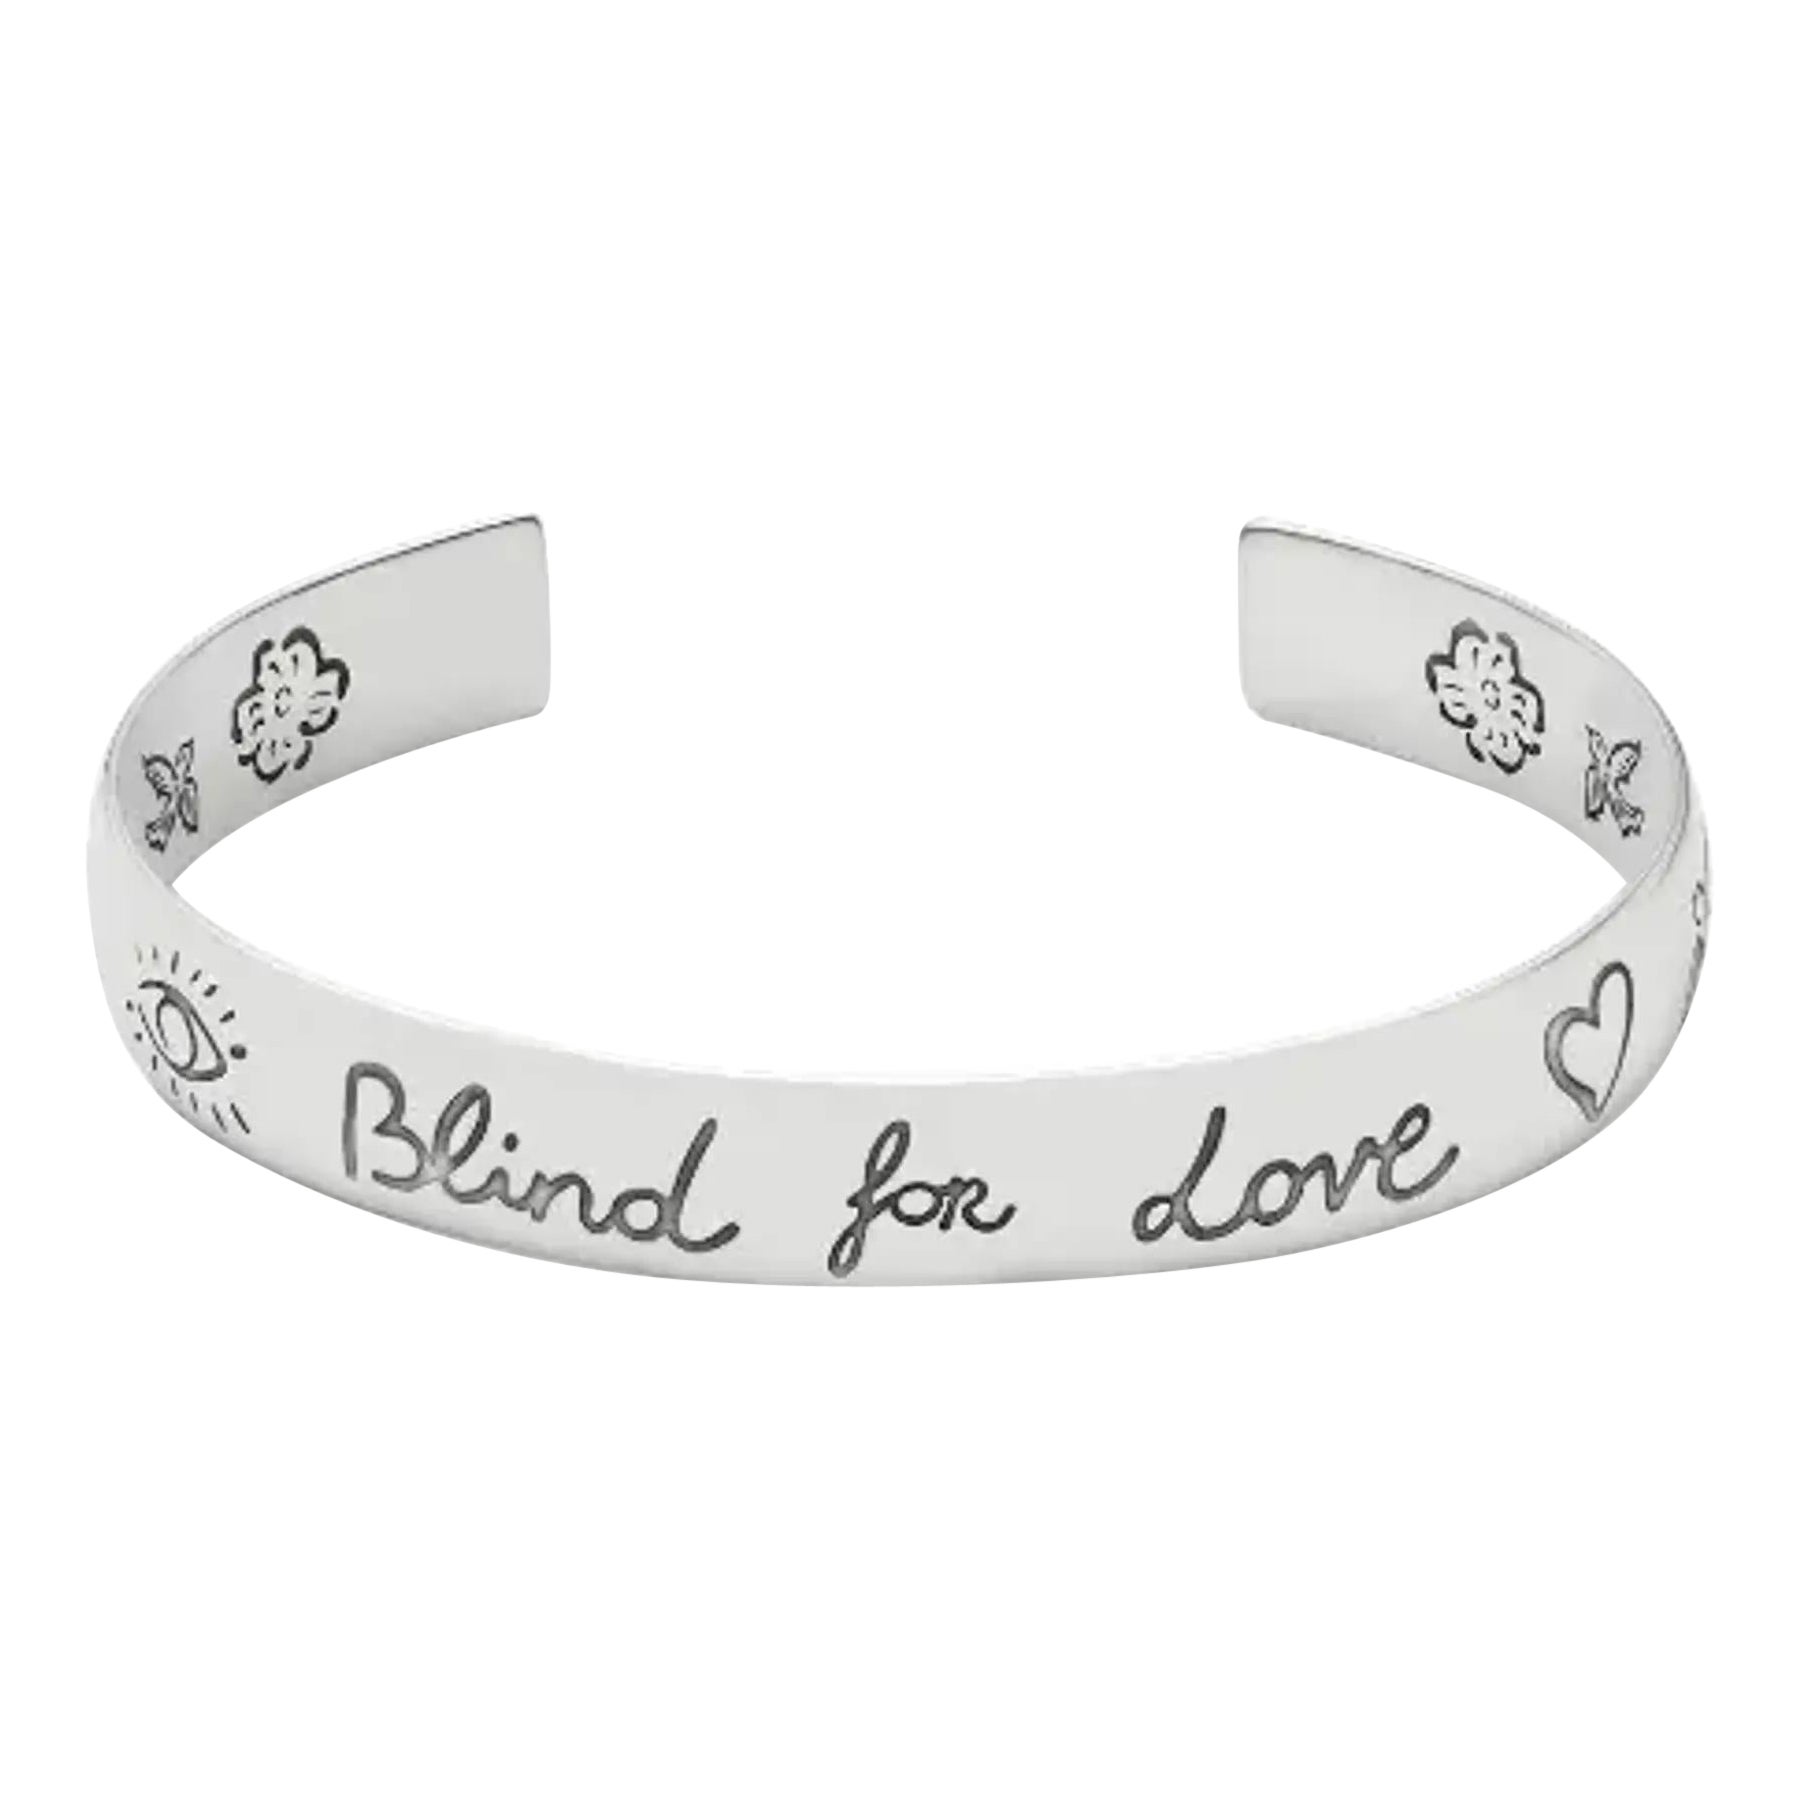 Gucci Blind For Love Bracelet manchette en argent sterling 925, taille 17